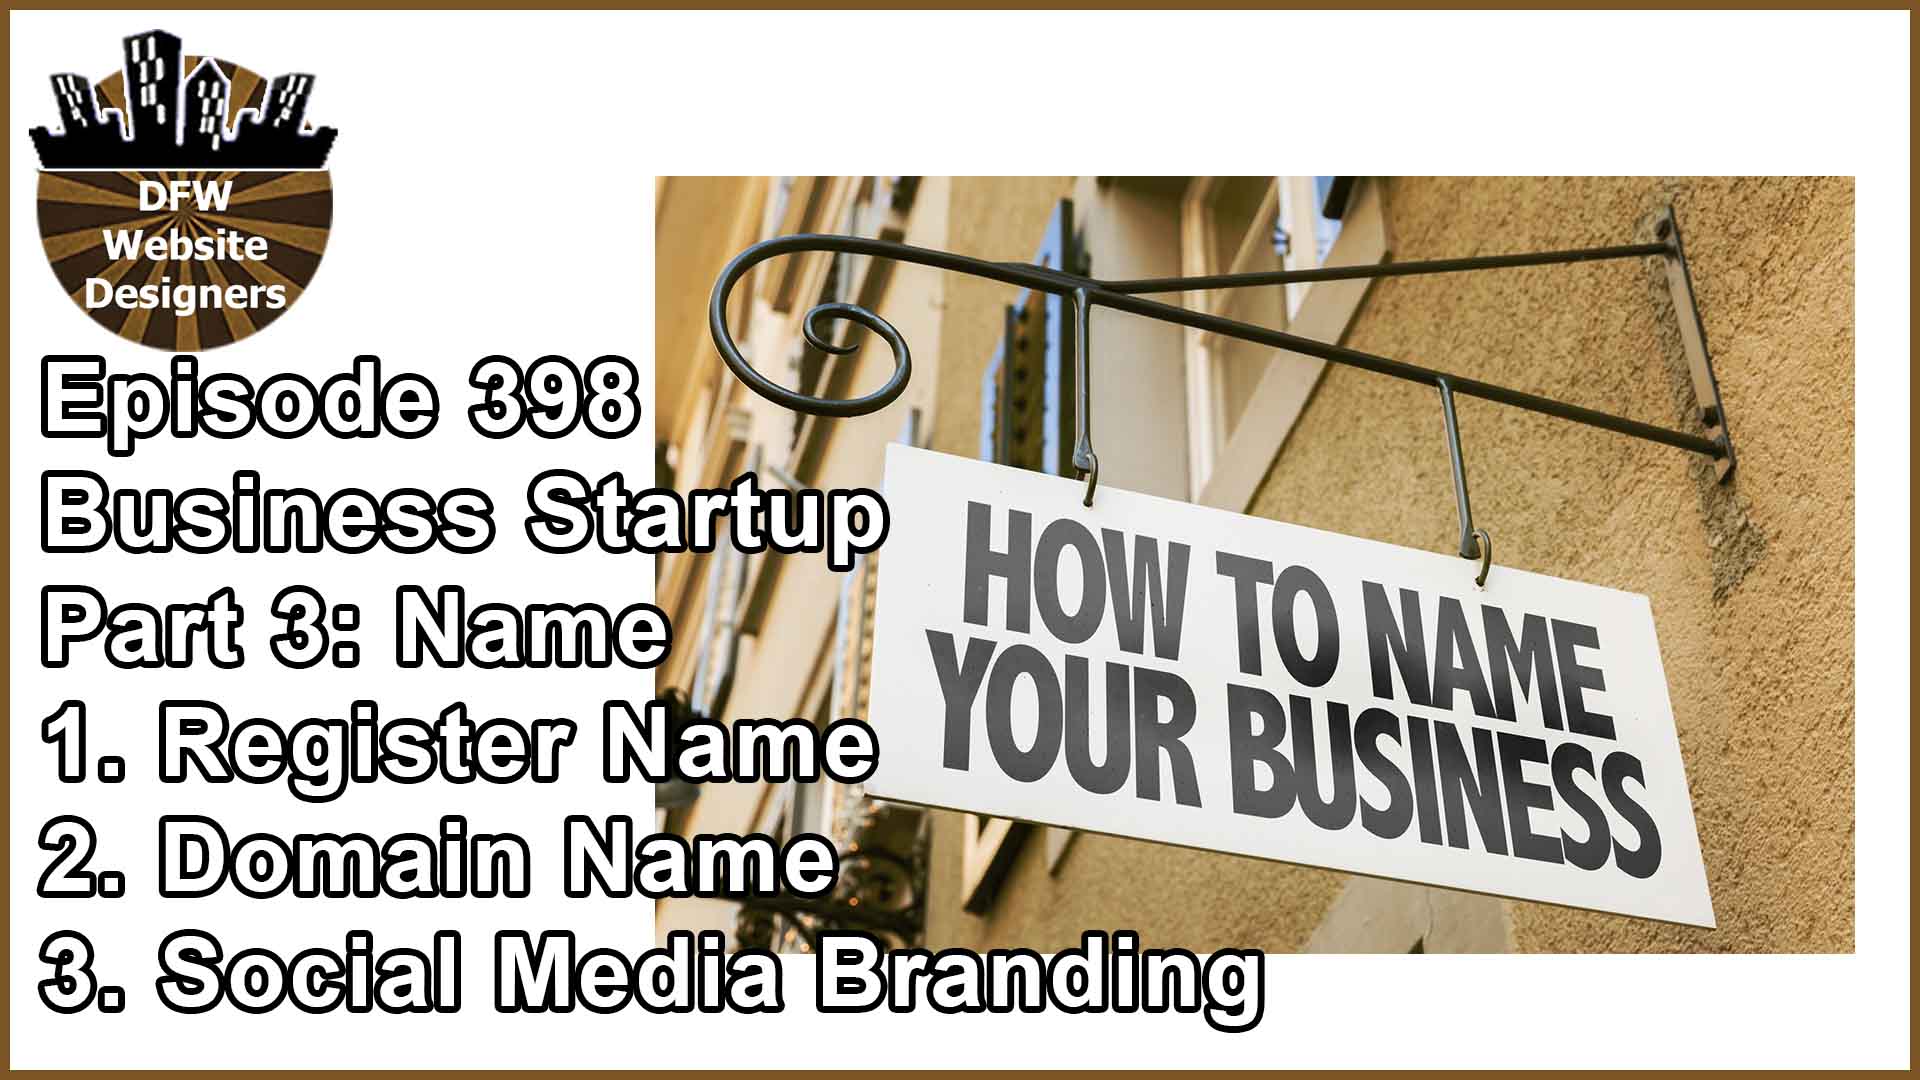 Episode 398 Startup Business Pt3 Name: Register, Domain, Social Media Branding